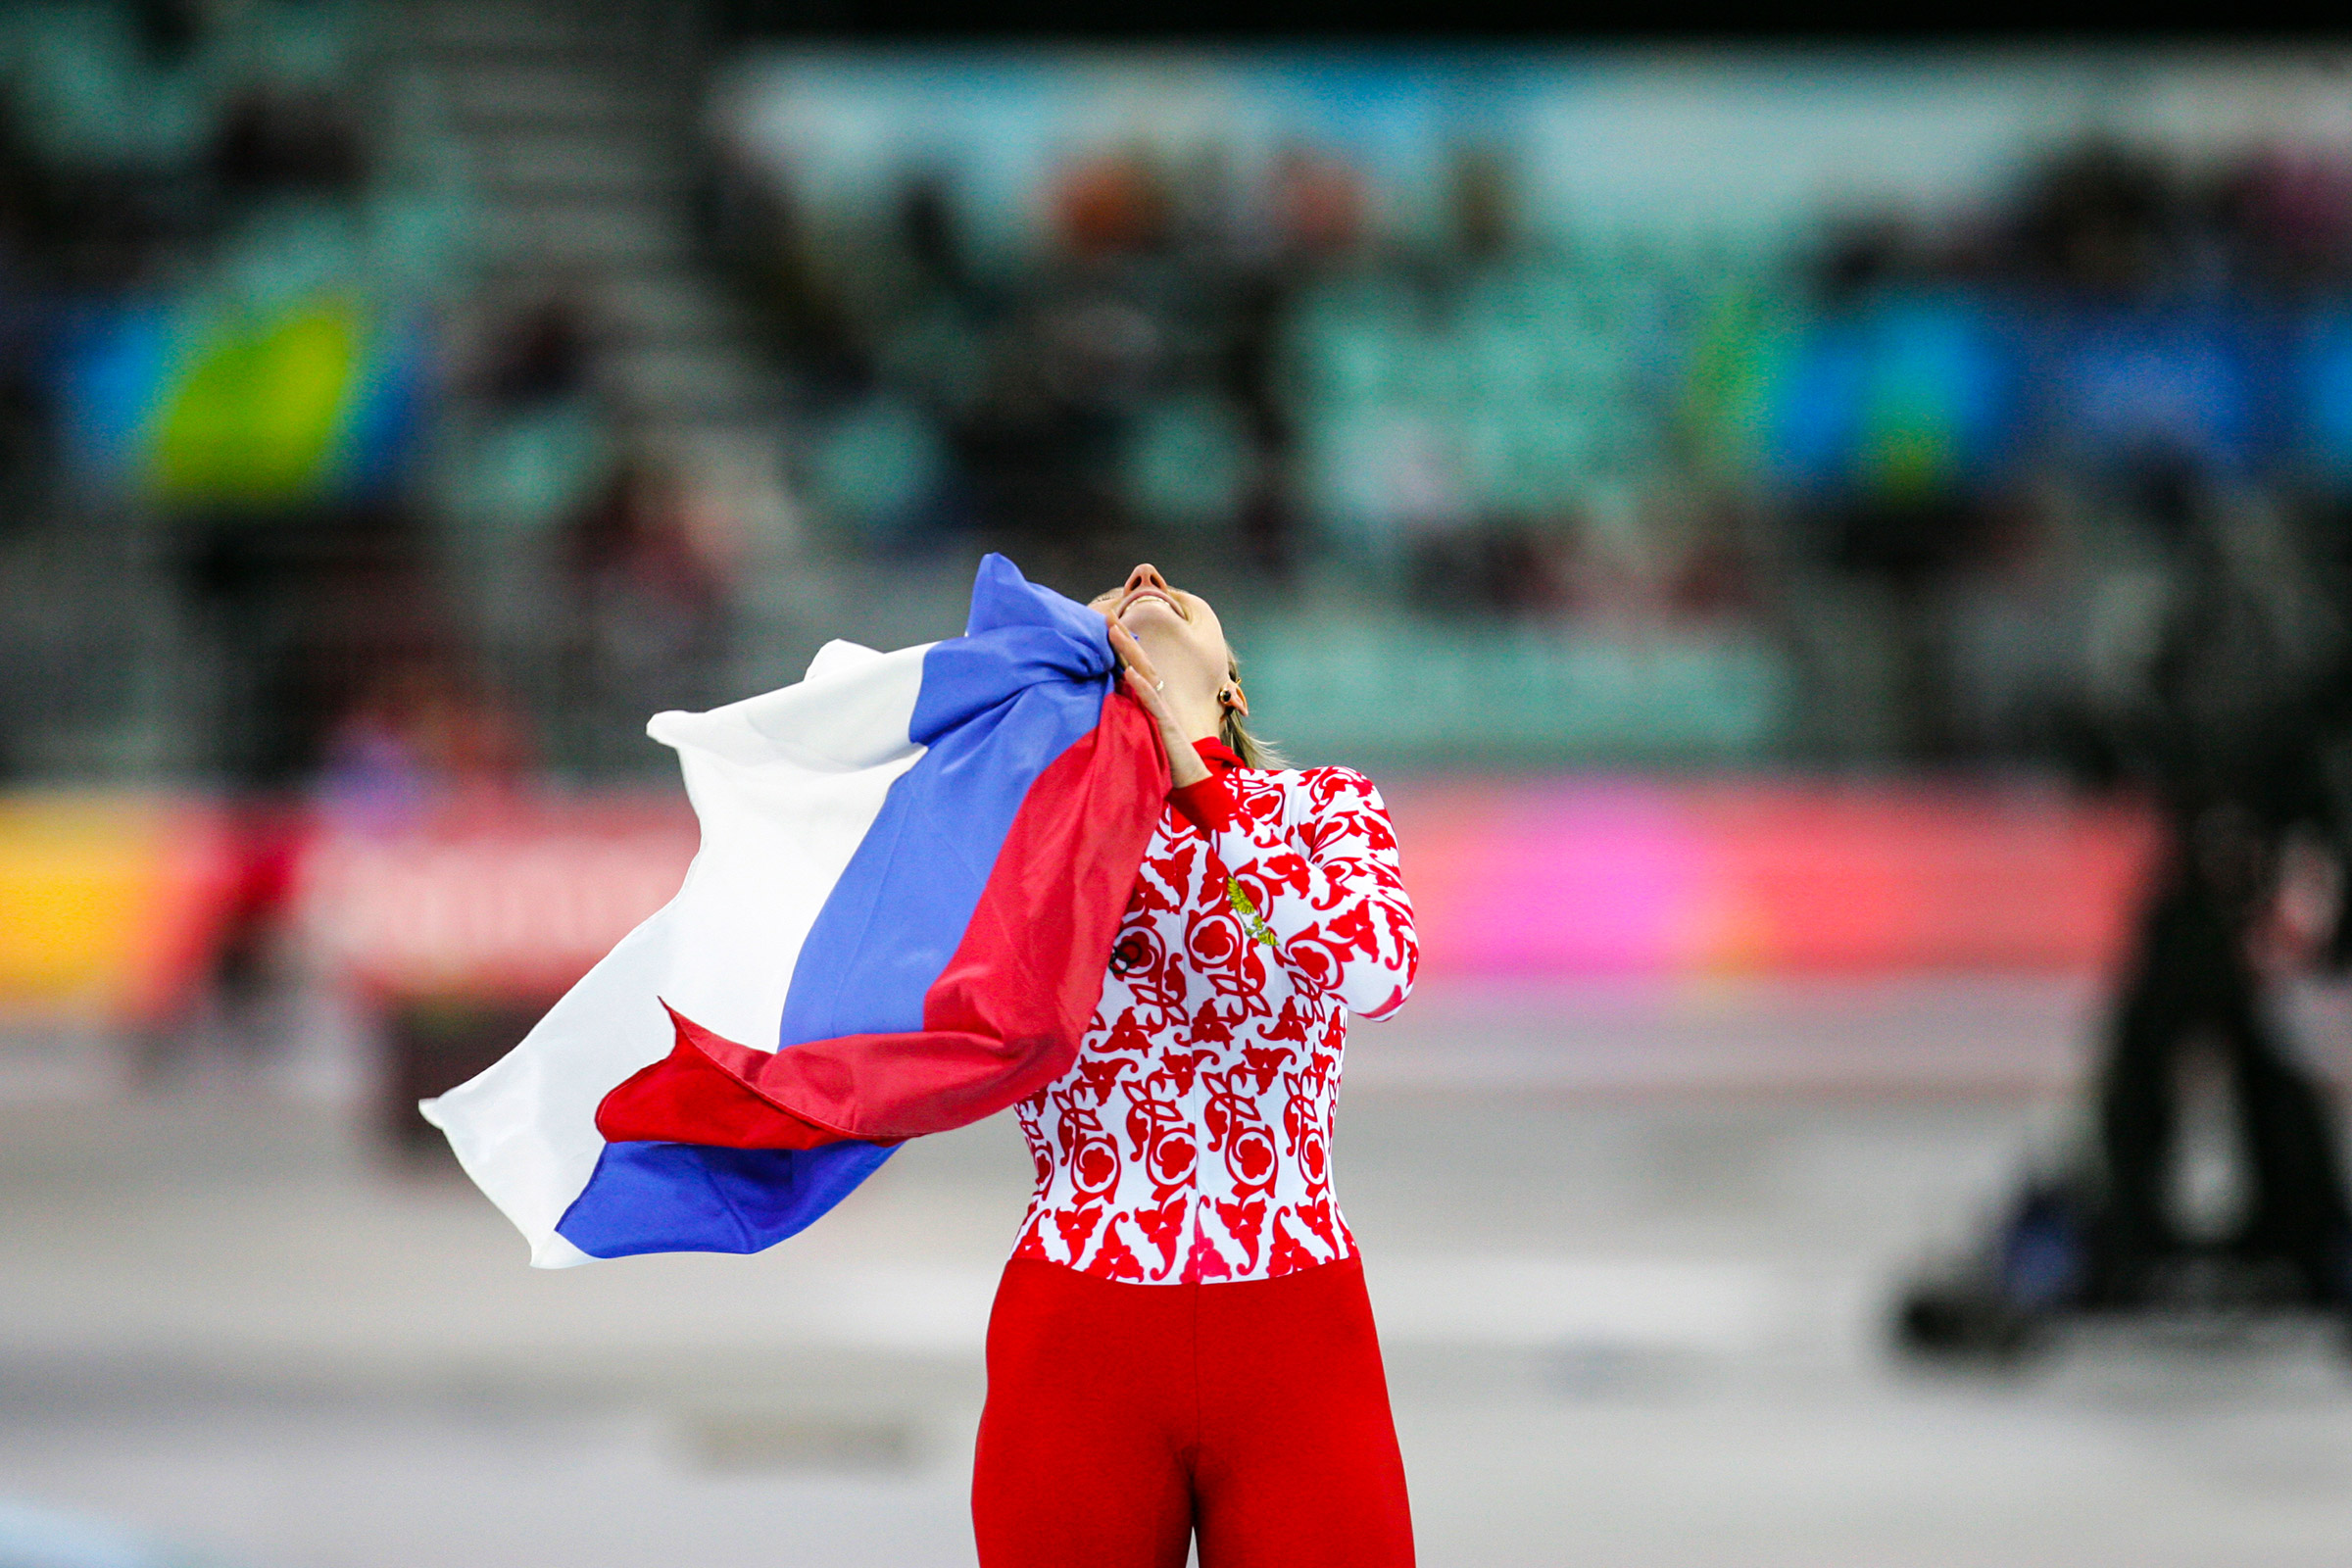 Светлана Журова завоевала золотую медаль после второго забега на 500-метровой дистанции Олимпиады-2006. Она стала одной из трех олимпийских чемпионов по конькобежному спорту в истории России.
